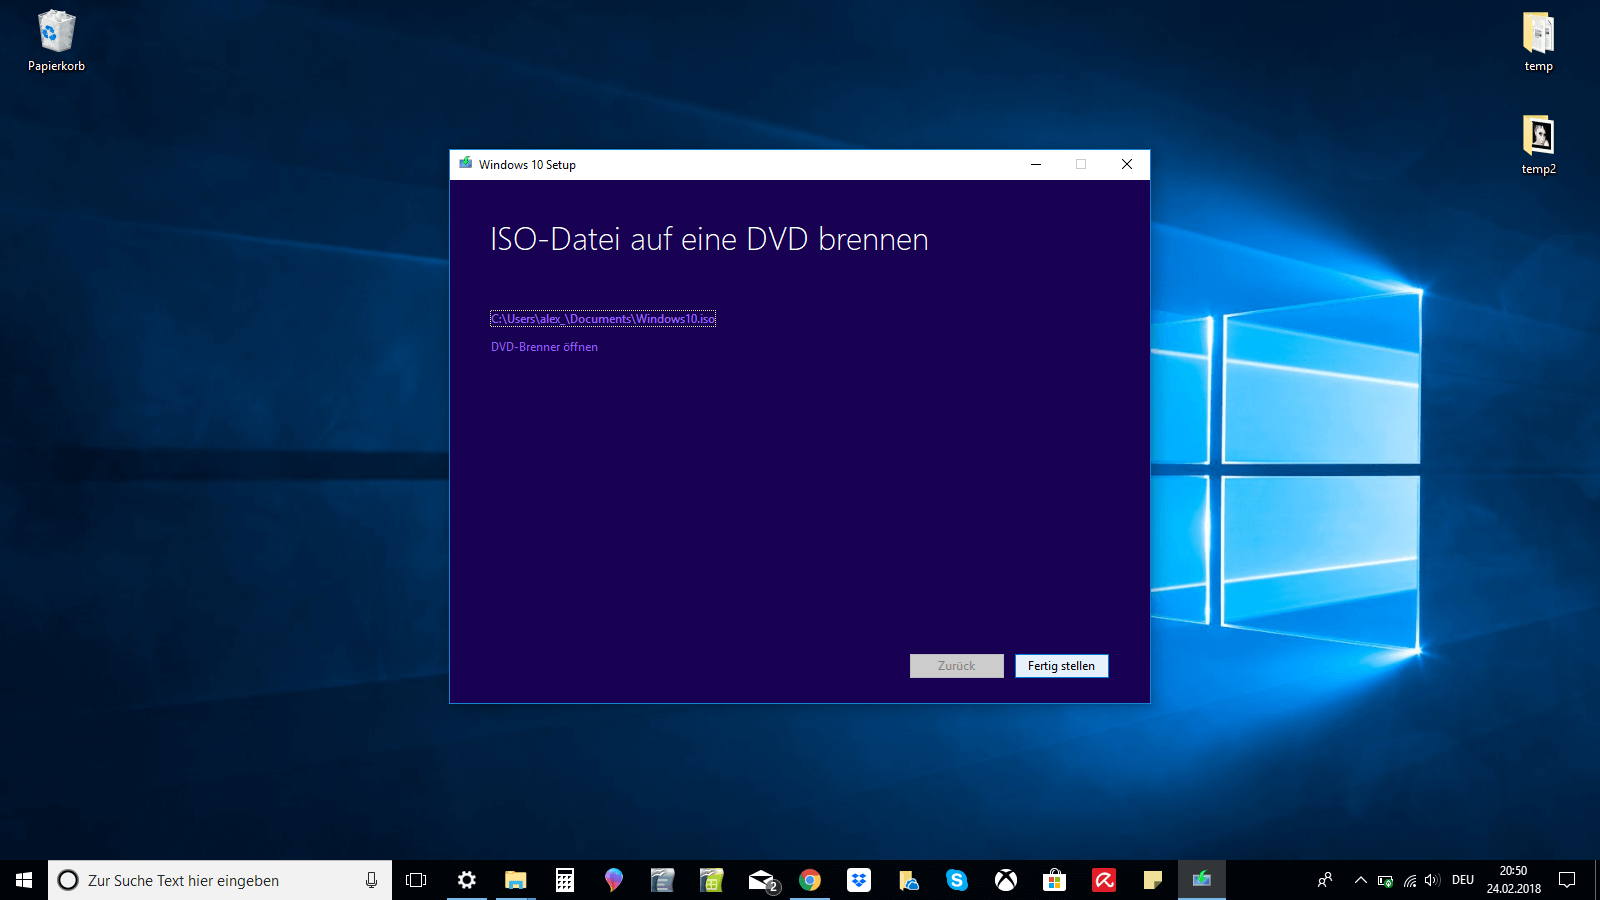 Windows-10-Setup-Fenster mit dem Text „ISO-Datei auf eine DVD brennen“